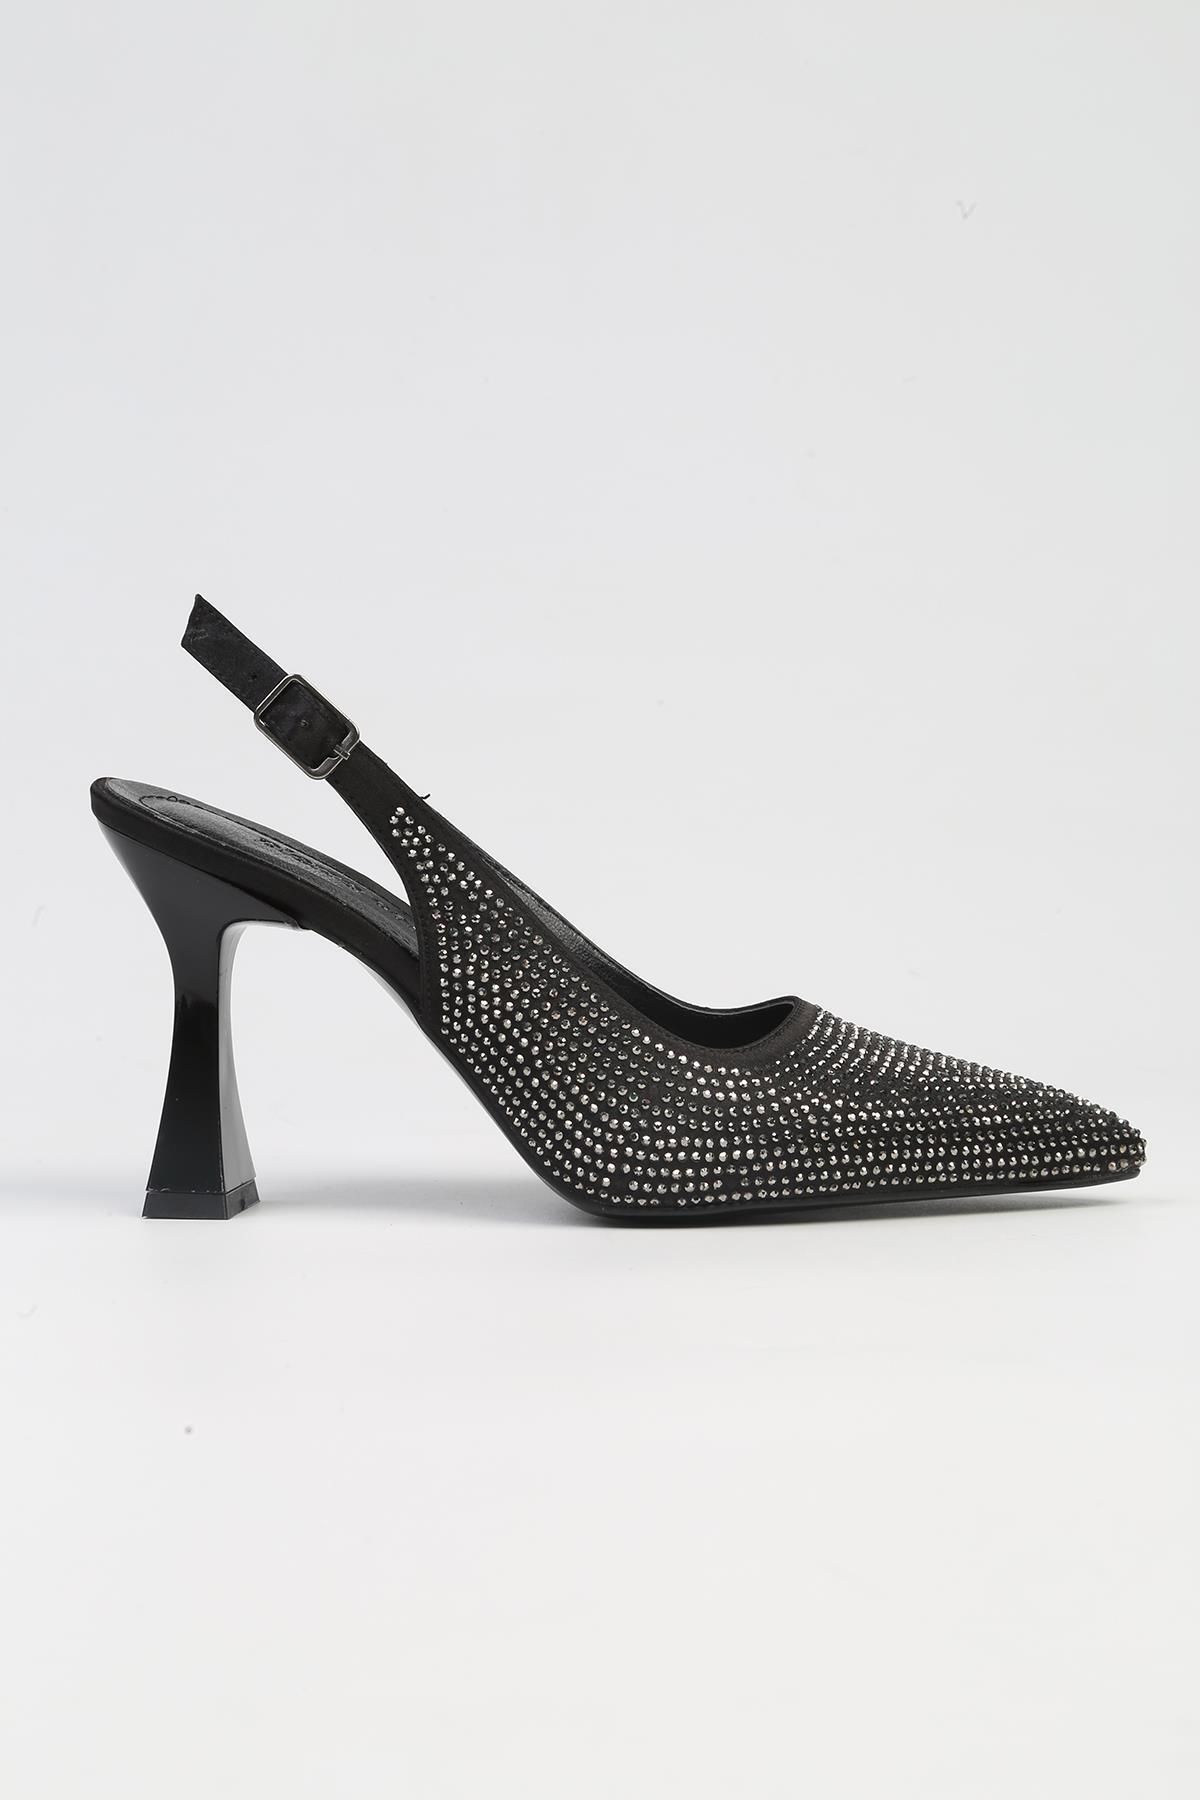 Pierre Cardin ® | PC-53002- 3691 Siyah-Kadın Topuklu Ayakkabı